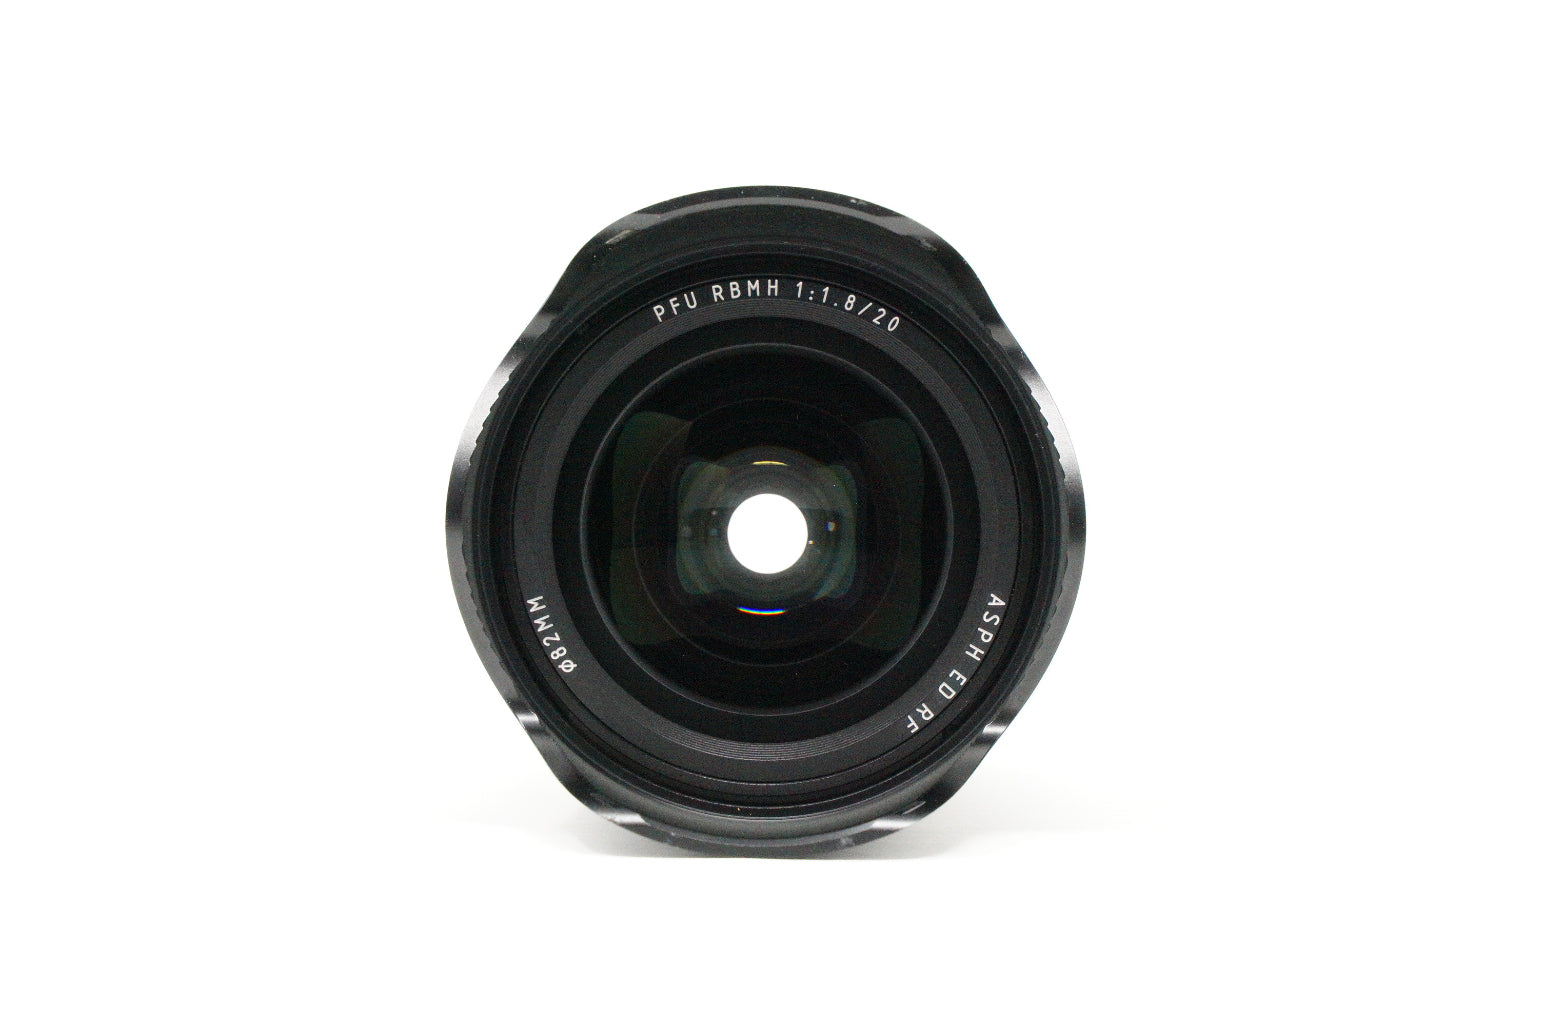 Used Viltrox 20mm F1.8 PFU RBMH Prime lens in Nikon Z Mount